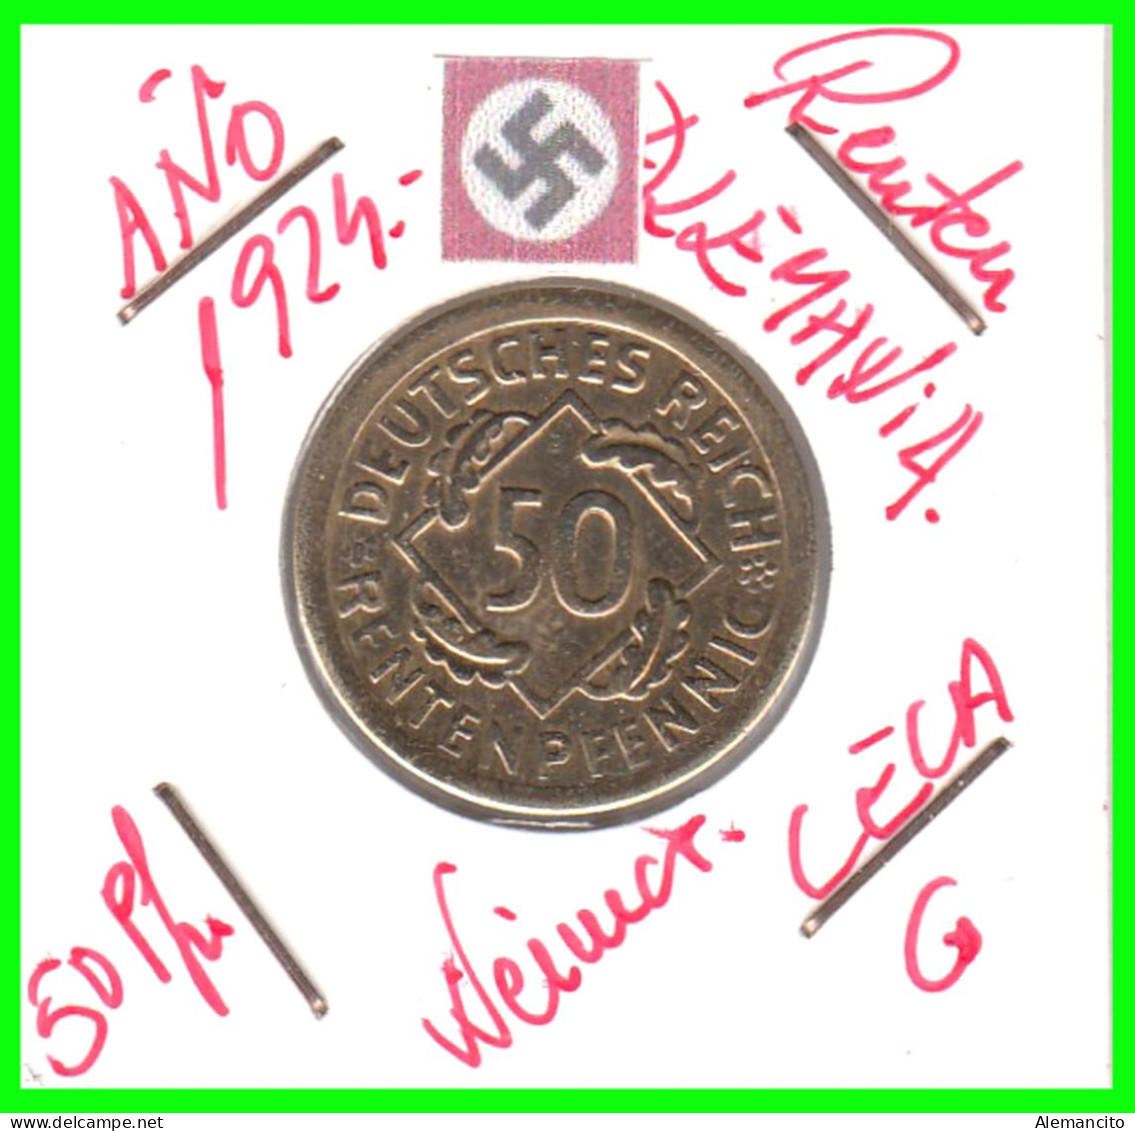 GERMANY REPÚBLICA DE WEIMAR 50 PFENNIG DE PENSIÓN ( 1924 CECA - G ) MONEDA DEL AÑO 1923-1925 (RENTEN PFENNIG KM # 32 - 50 Rentenpfennig & 50 Reichspfennig